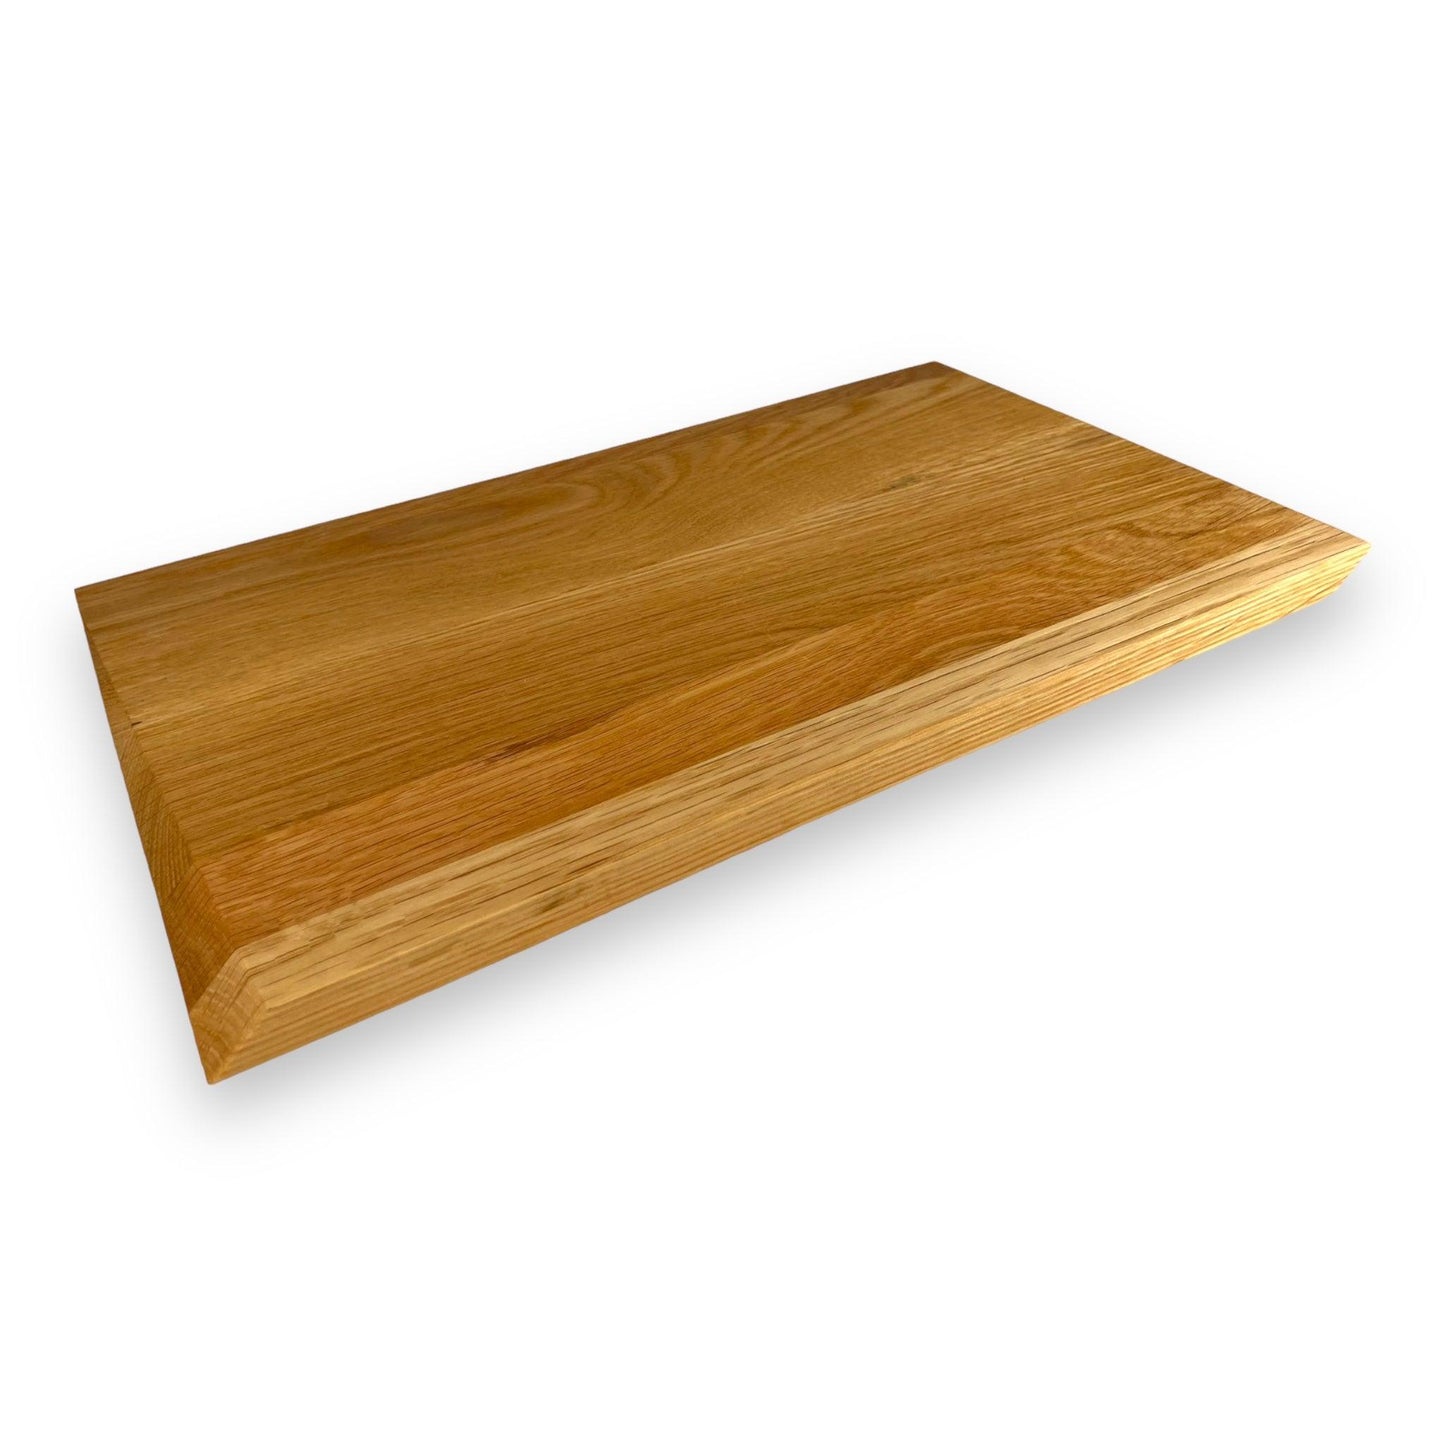 Wooden serving plate White Oak, Z-cut, 8" X 16" - BOISWOOD